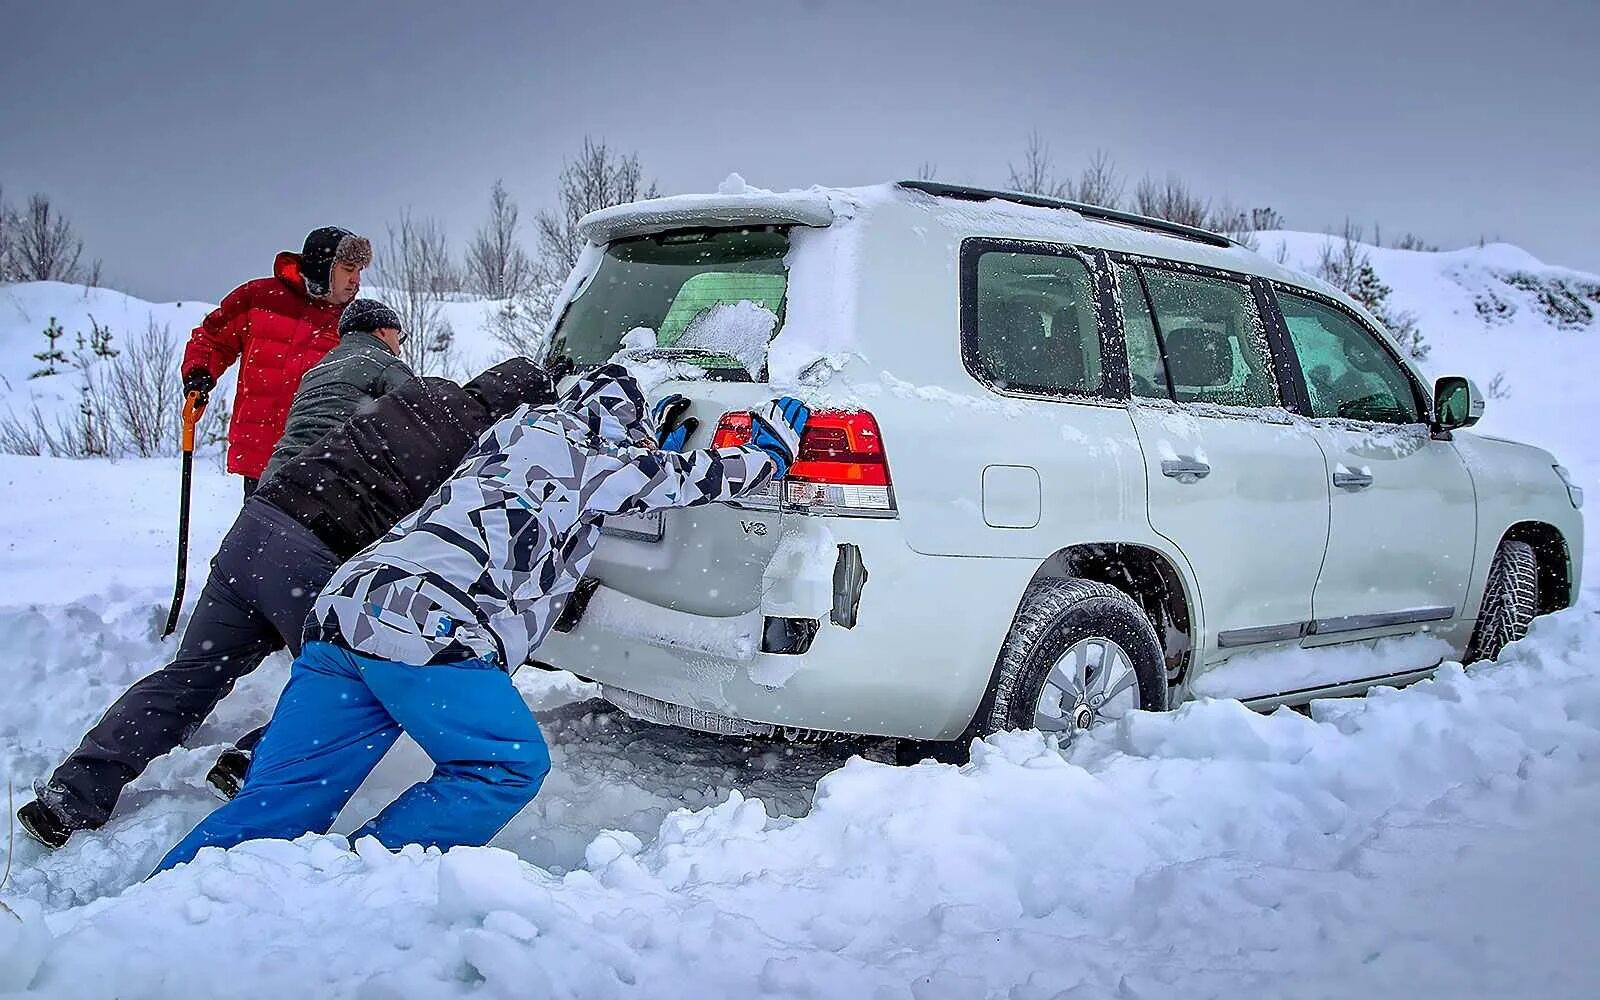 Машина снежка. Машина застряла в снегу. Автомобиль забуксовал в снегу. Машина в сугробе. Толкают машину зимой.